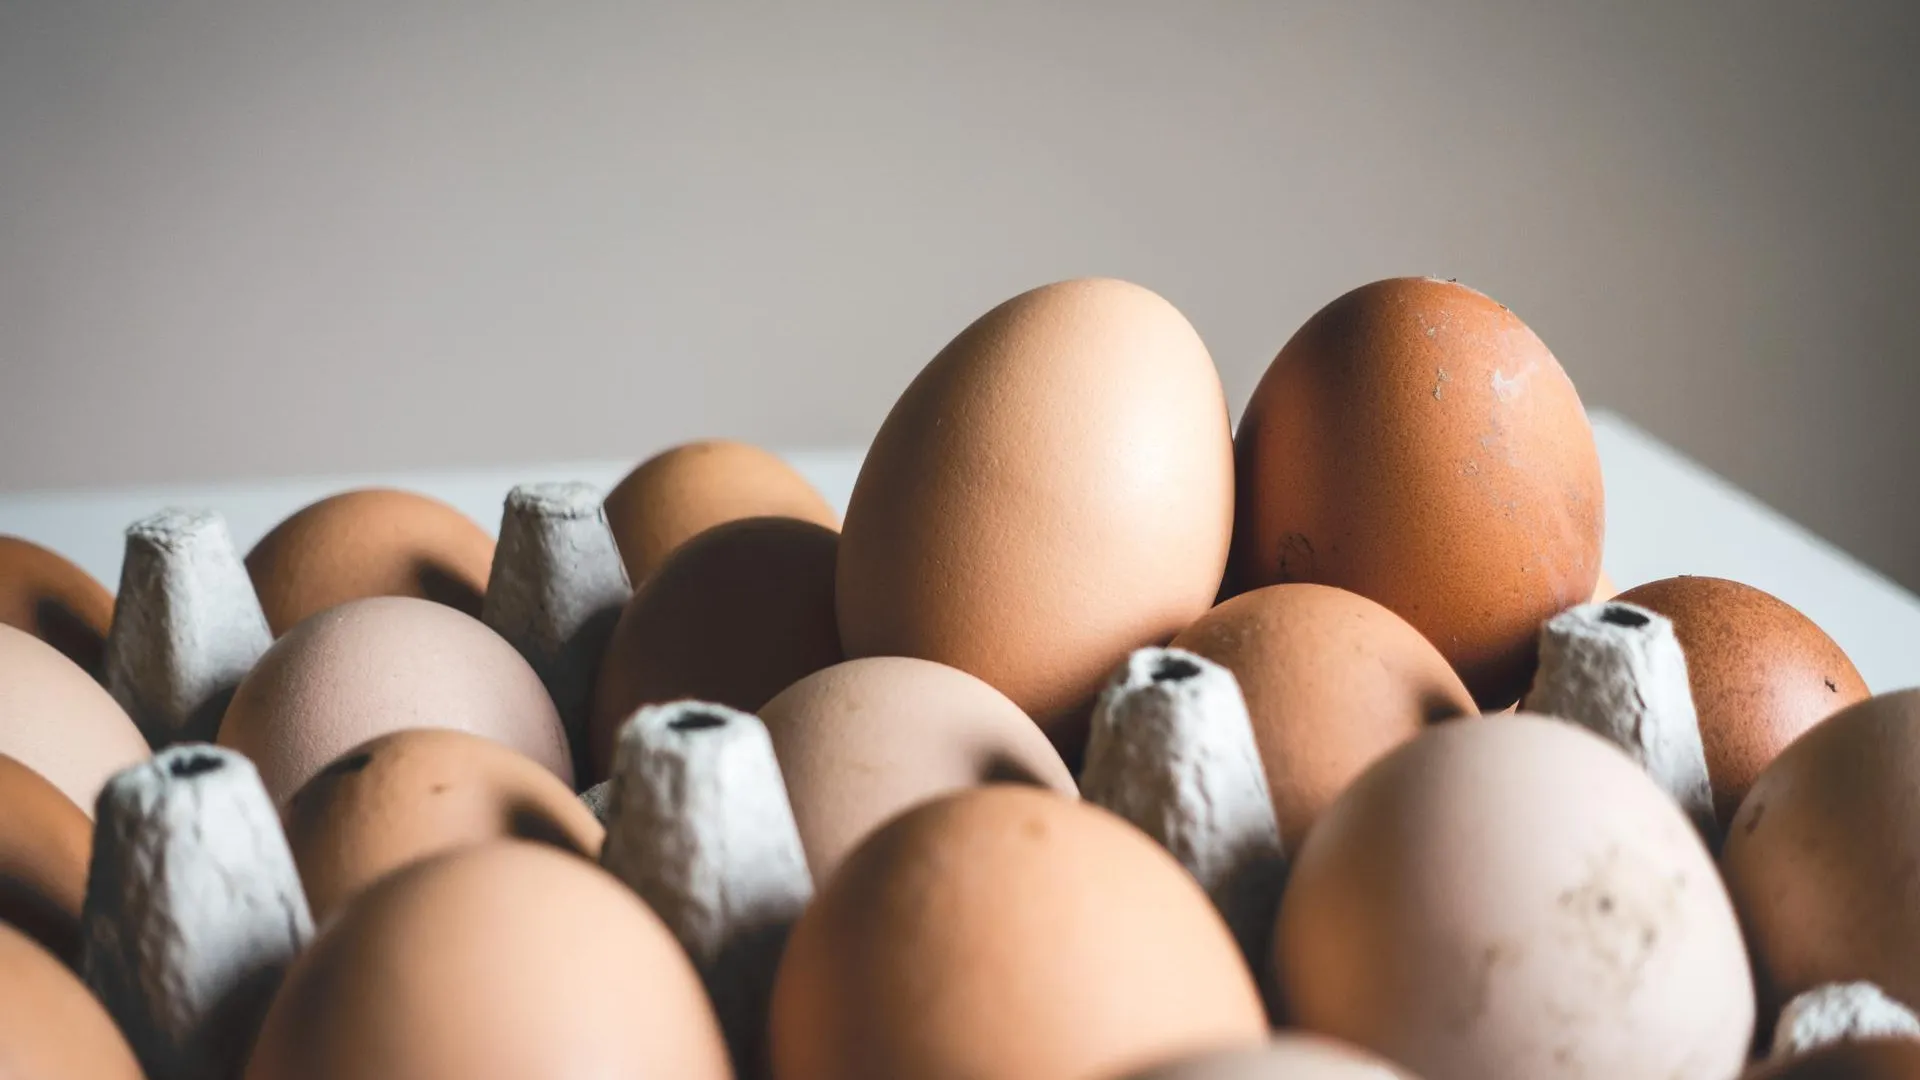 Экономист Сальников объяснил, почему импортные яйца не попали на полки магазинов